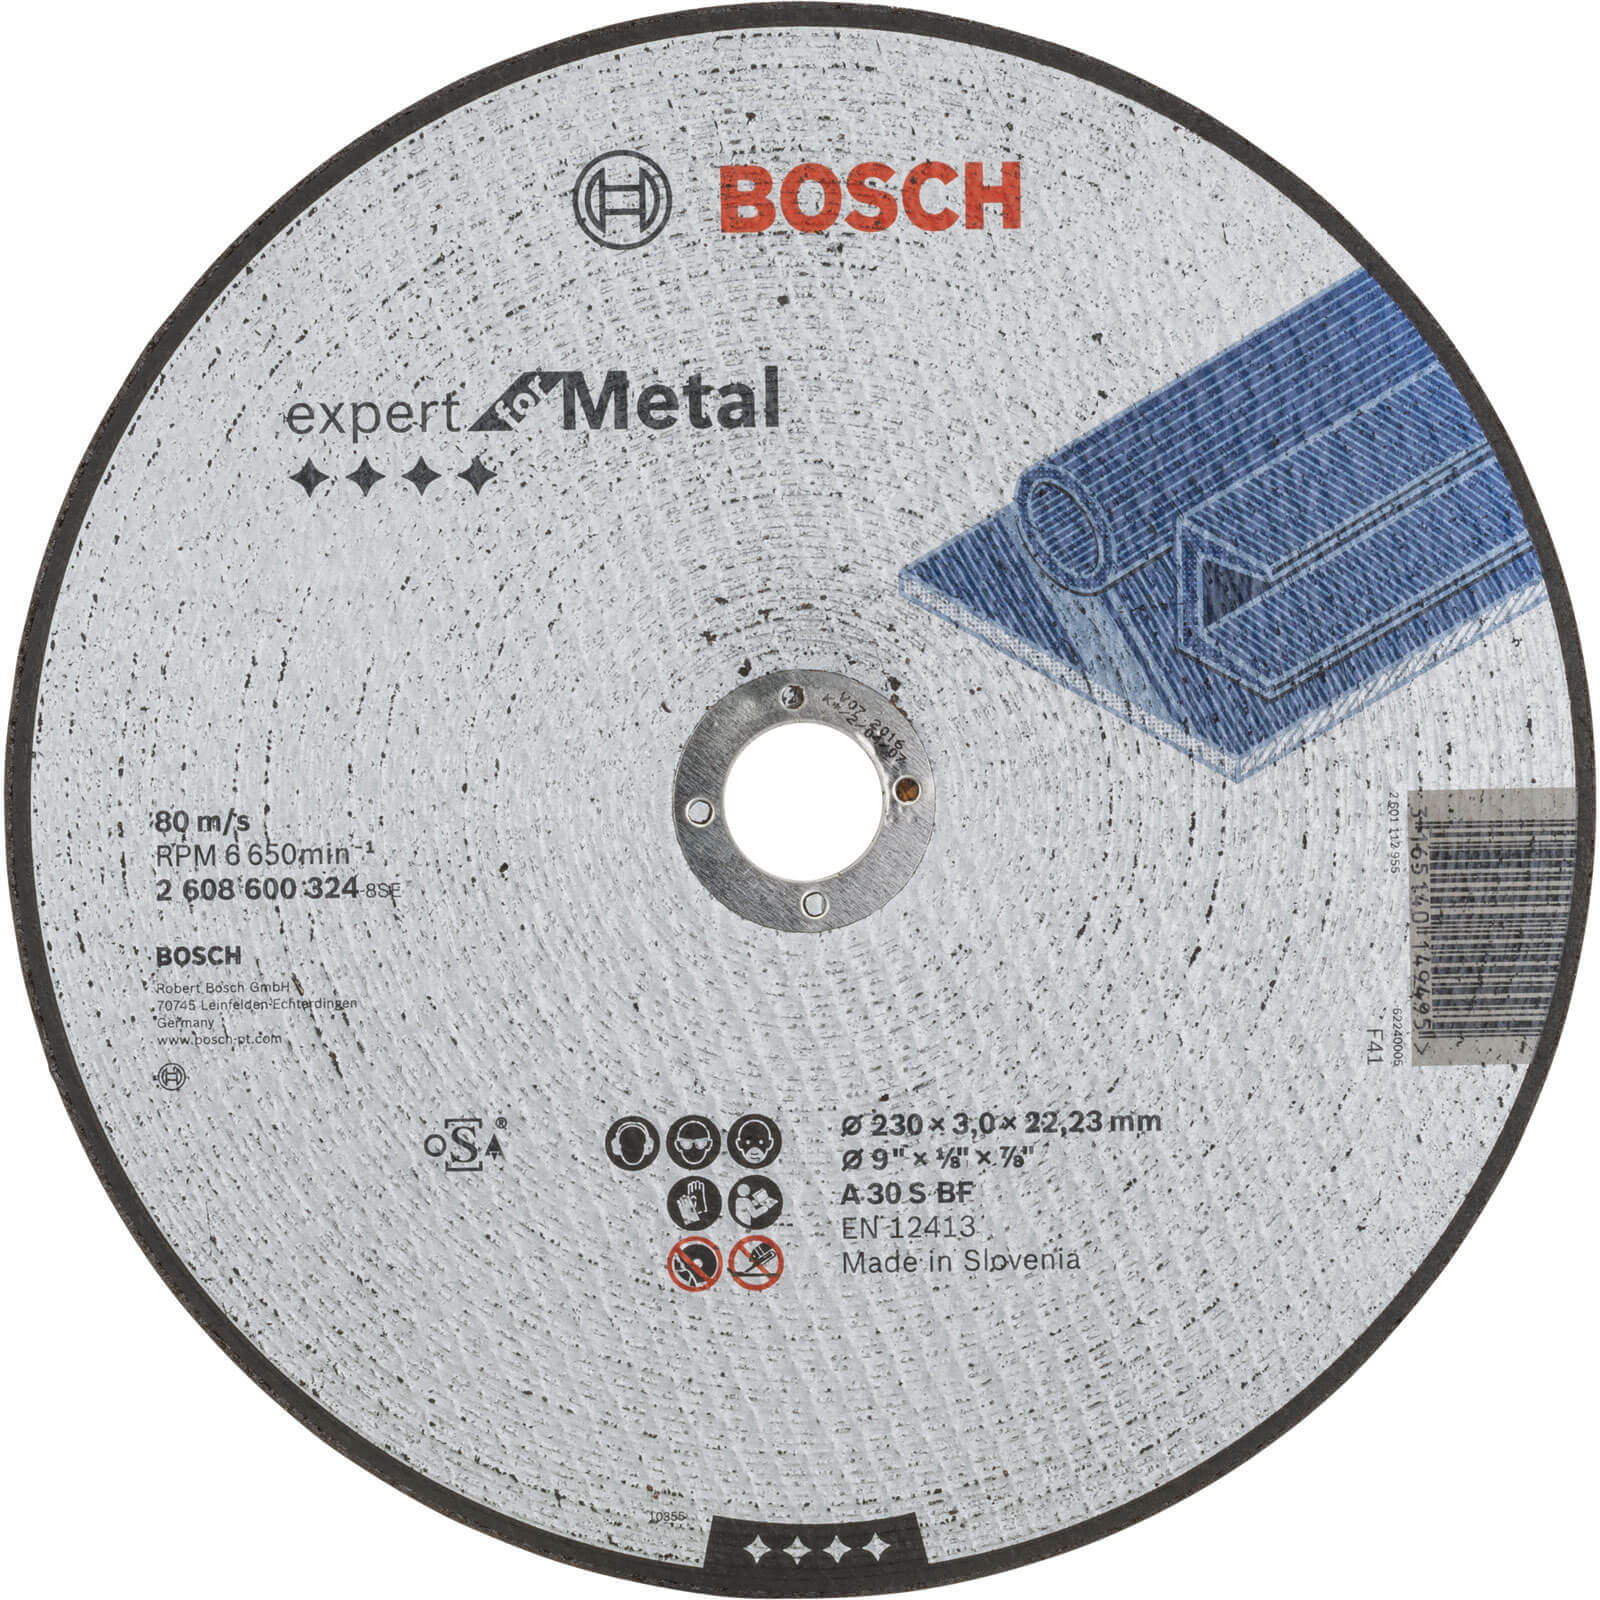 Photo of Bosch Expert A30s Bf Flat Metal Cutting Disc 230mm